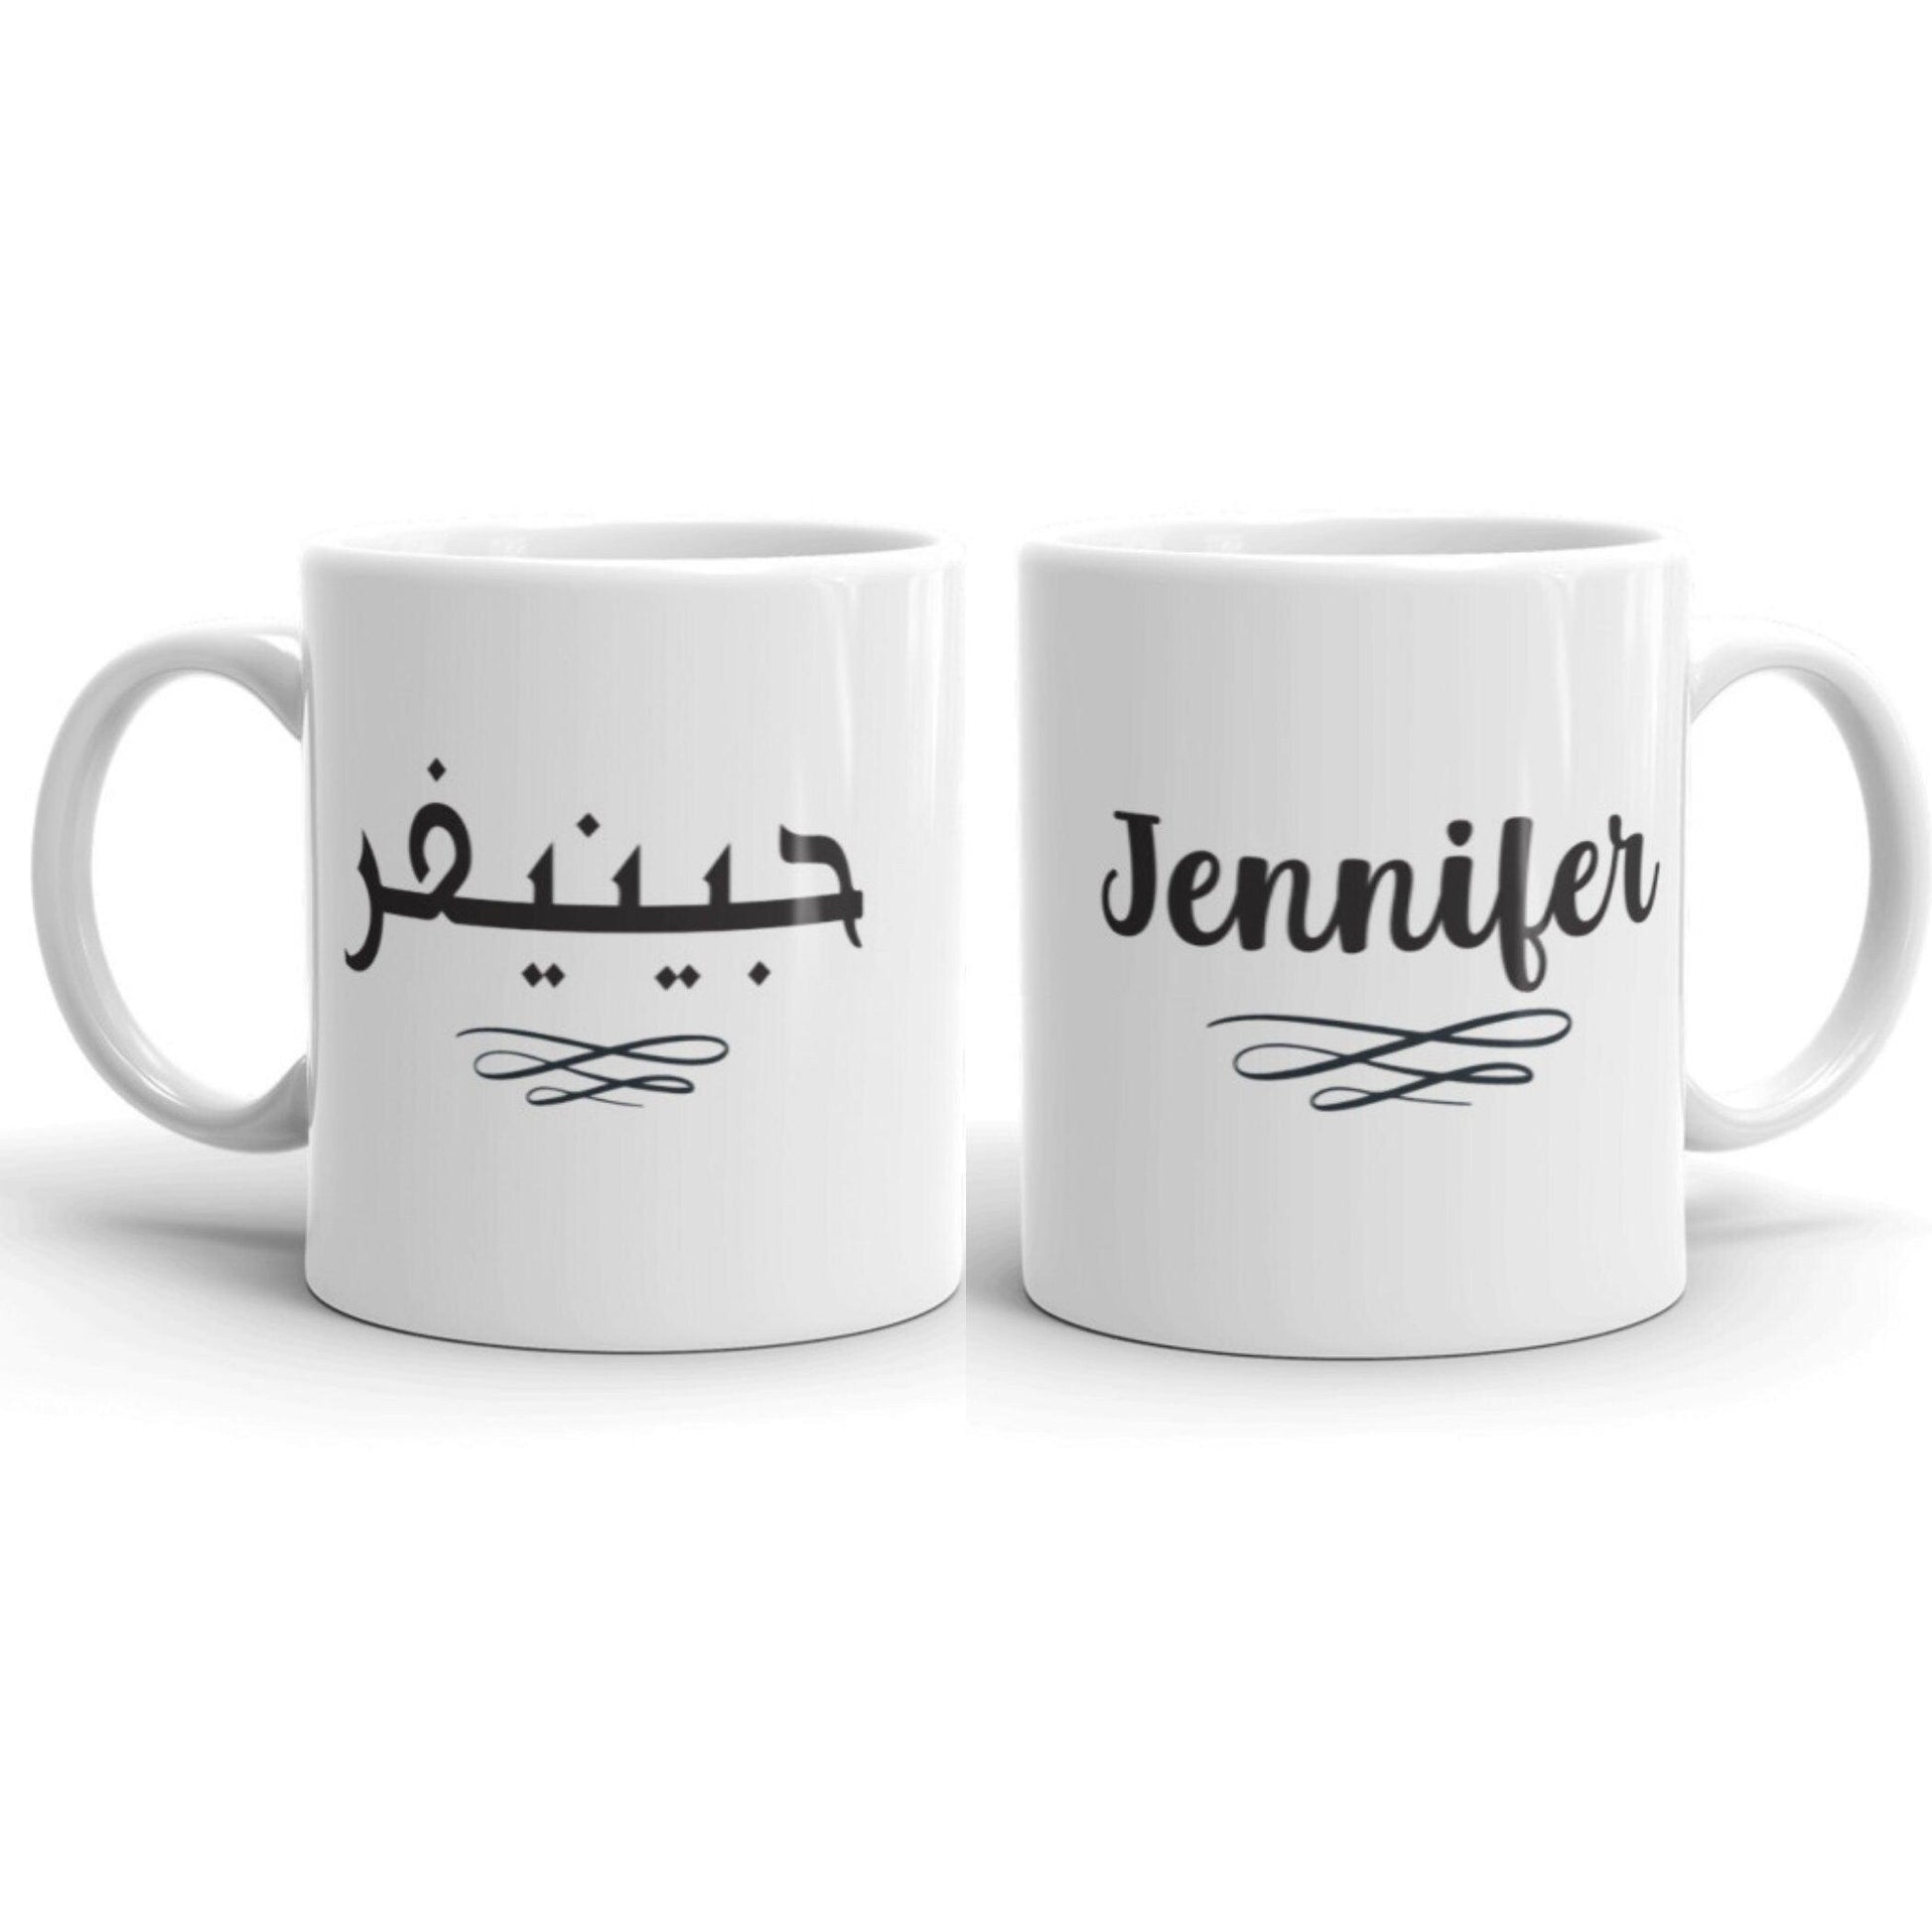 Mug | Personalized English and Arabic - Artkins Lifestyle